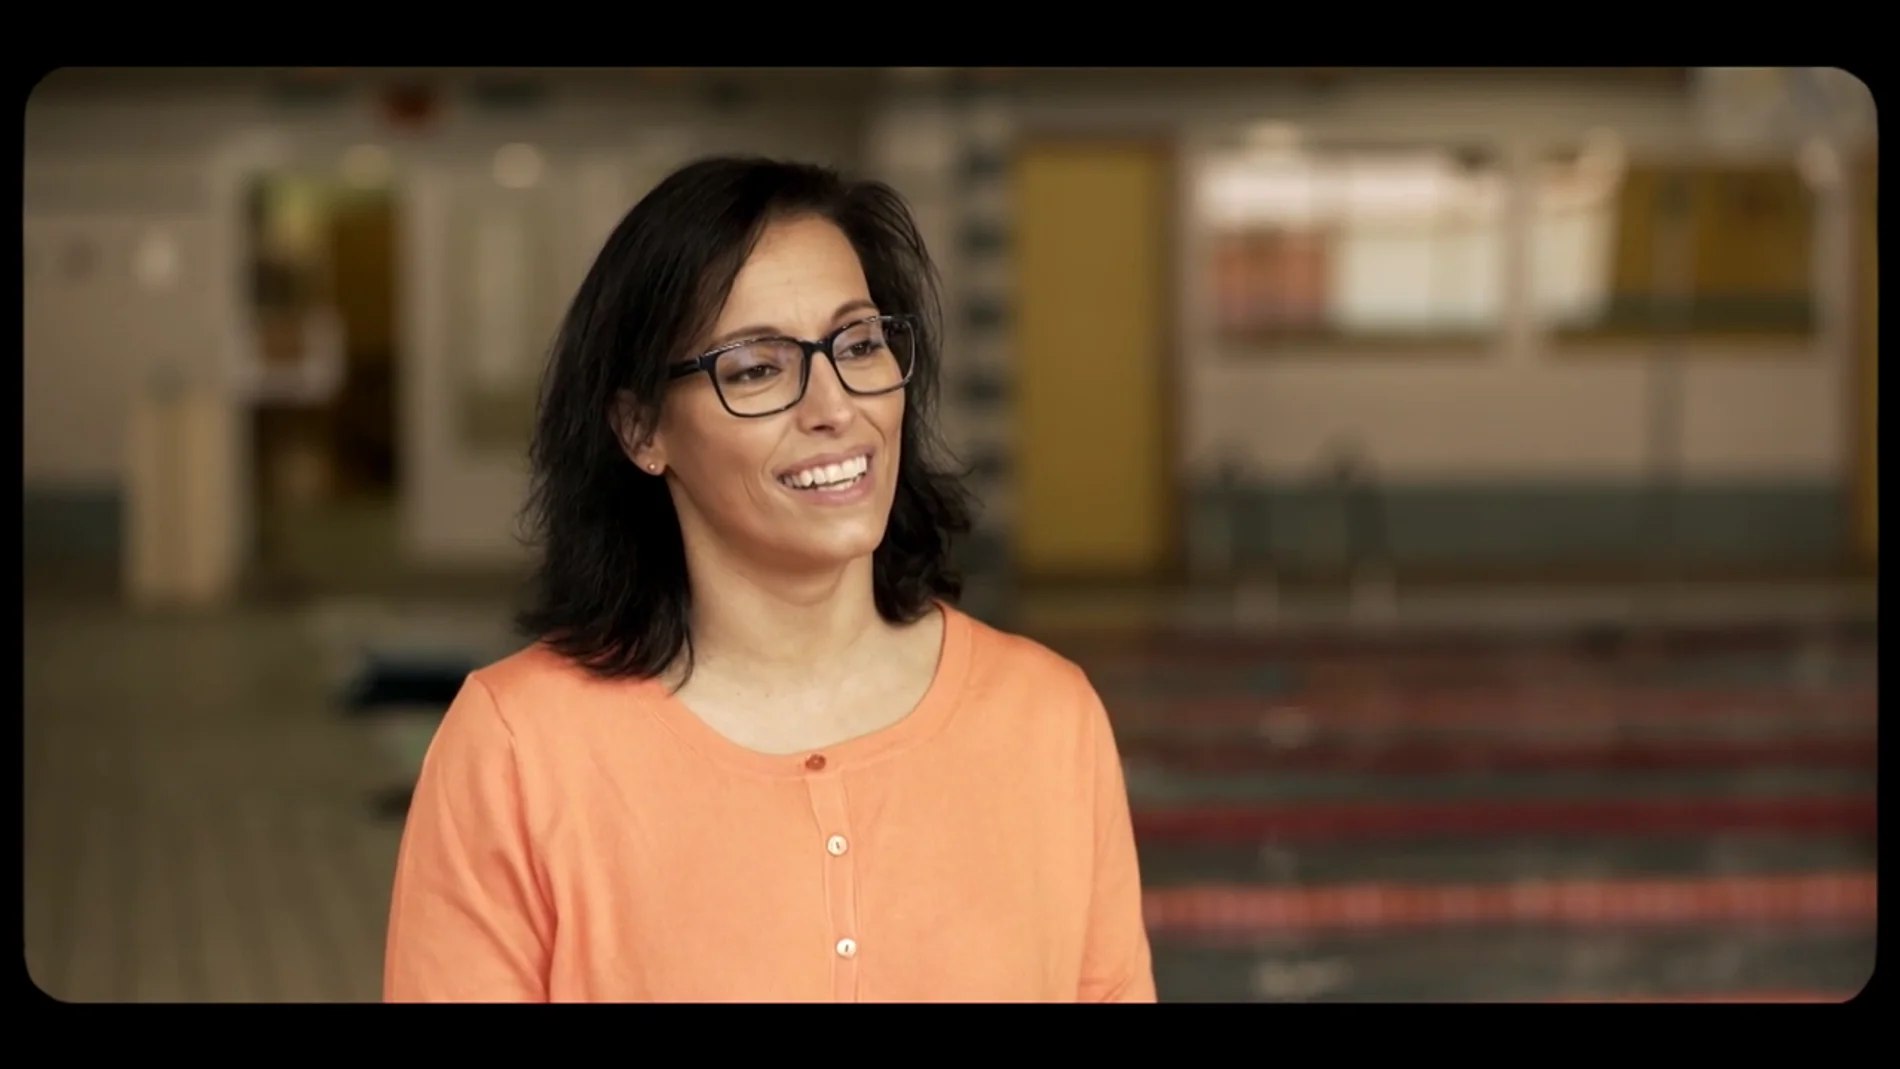 Los inicios de Teresa Perales en la natación tras perder la movilidad en las piernas: "Fue meterme al agua y decir 'soy libre'"